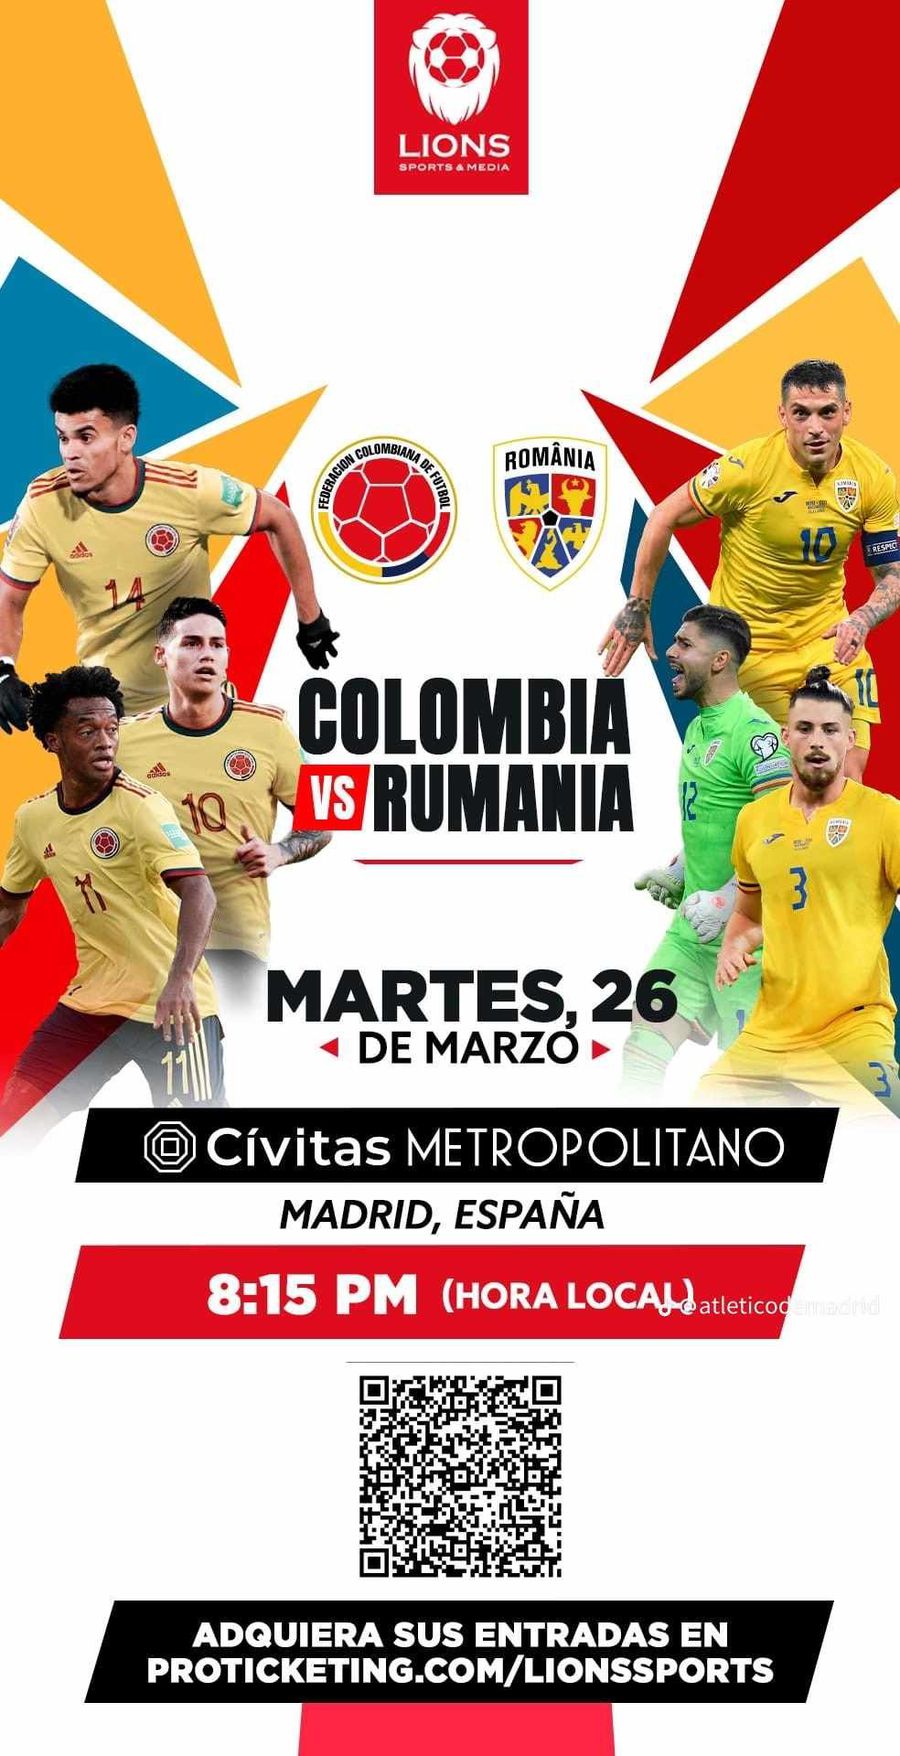 Atletico a schimbat repertoriul! Postare pe ritmuri de B.U.G. Mafia pentru Horațiu Moldovan în ziua amicalului Columbia - România